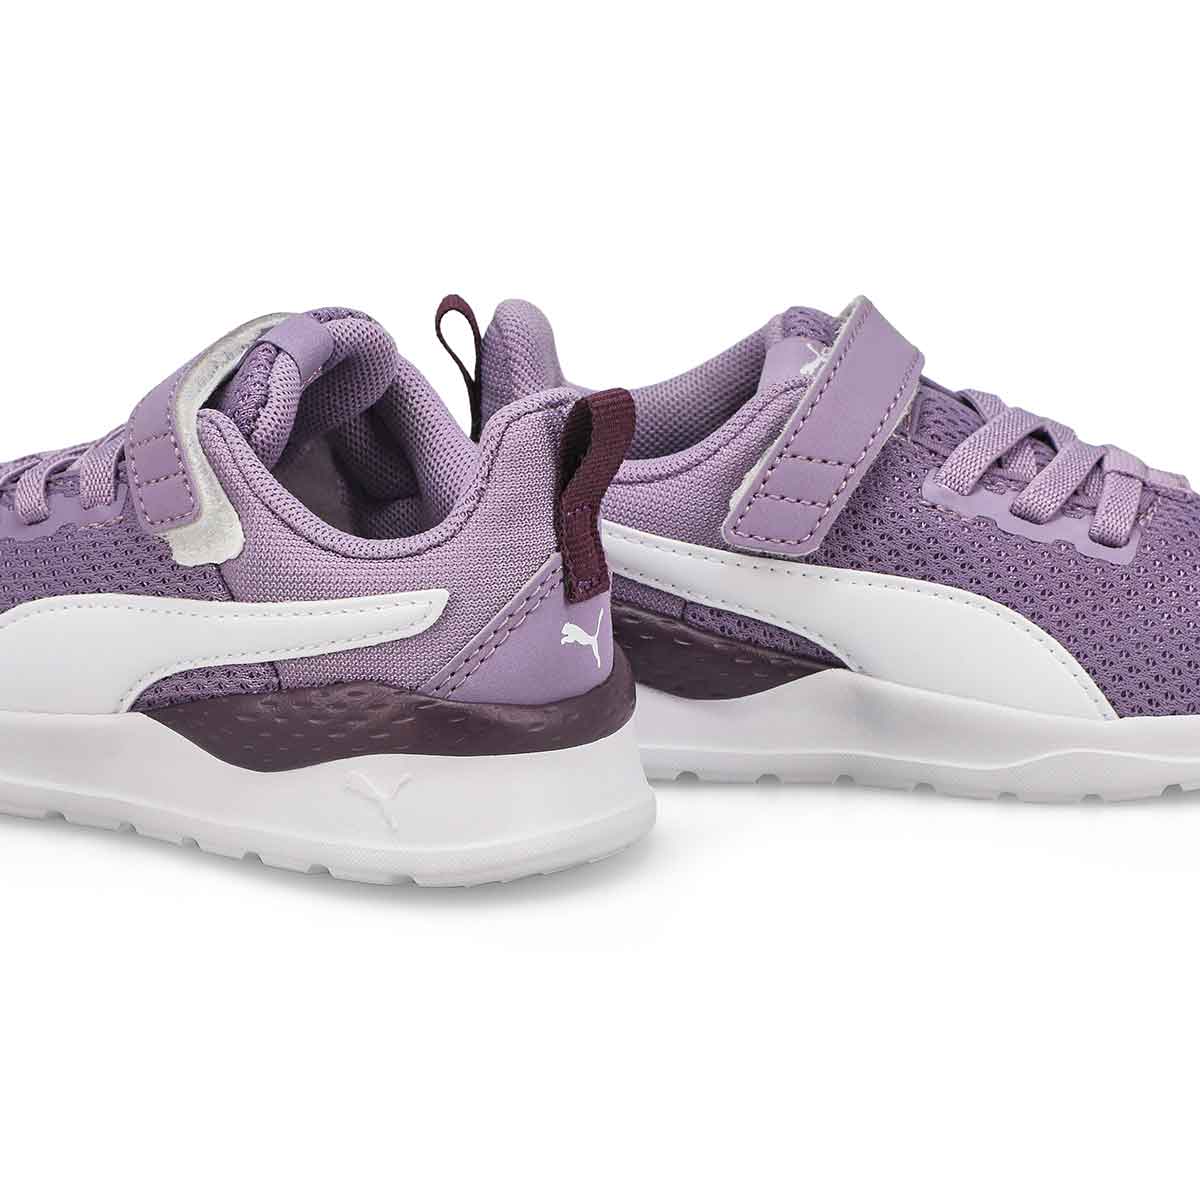 Infants' Anzarun Lite AC Sneaker - Purple/White